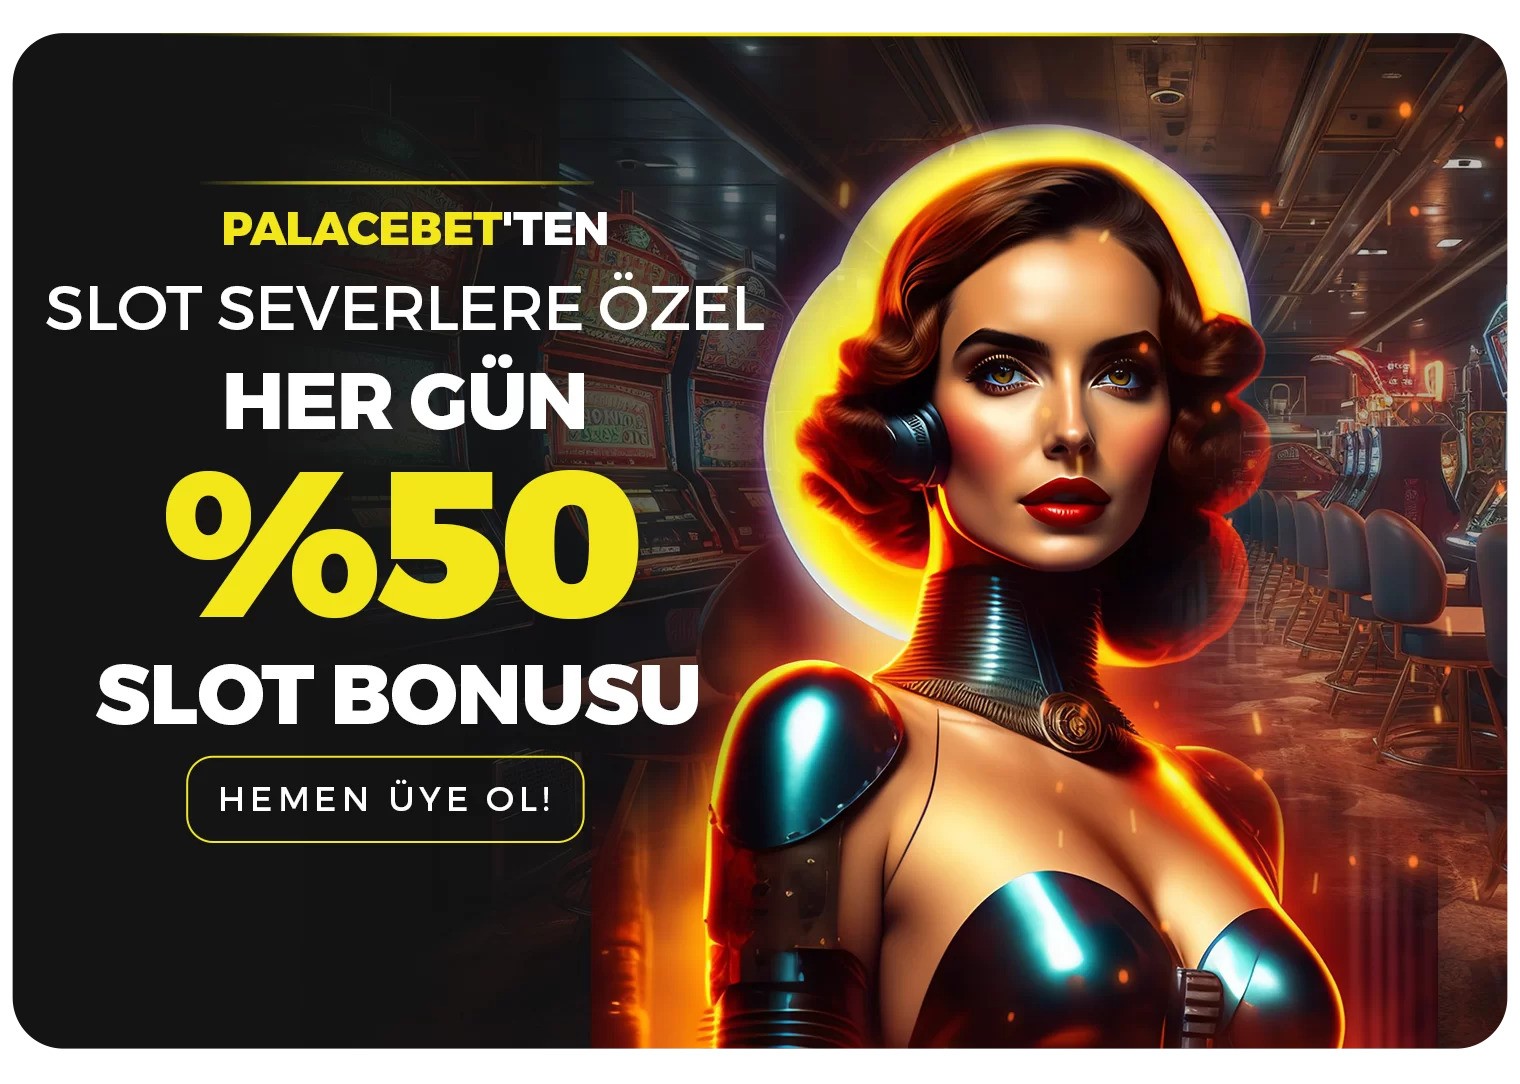 Palacebet %50 Slot yatrm bonusu